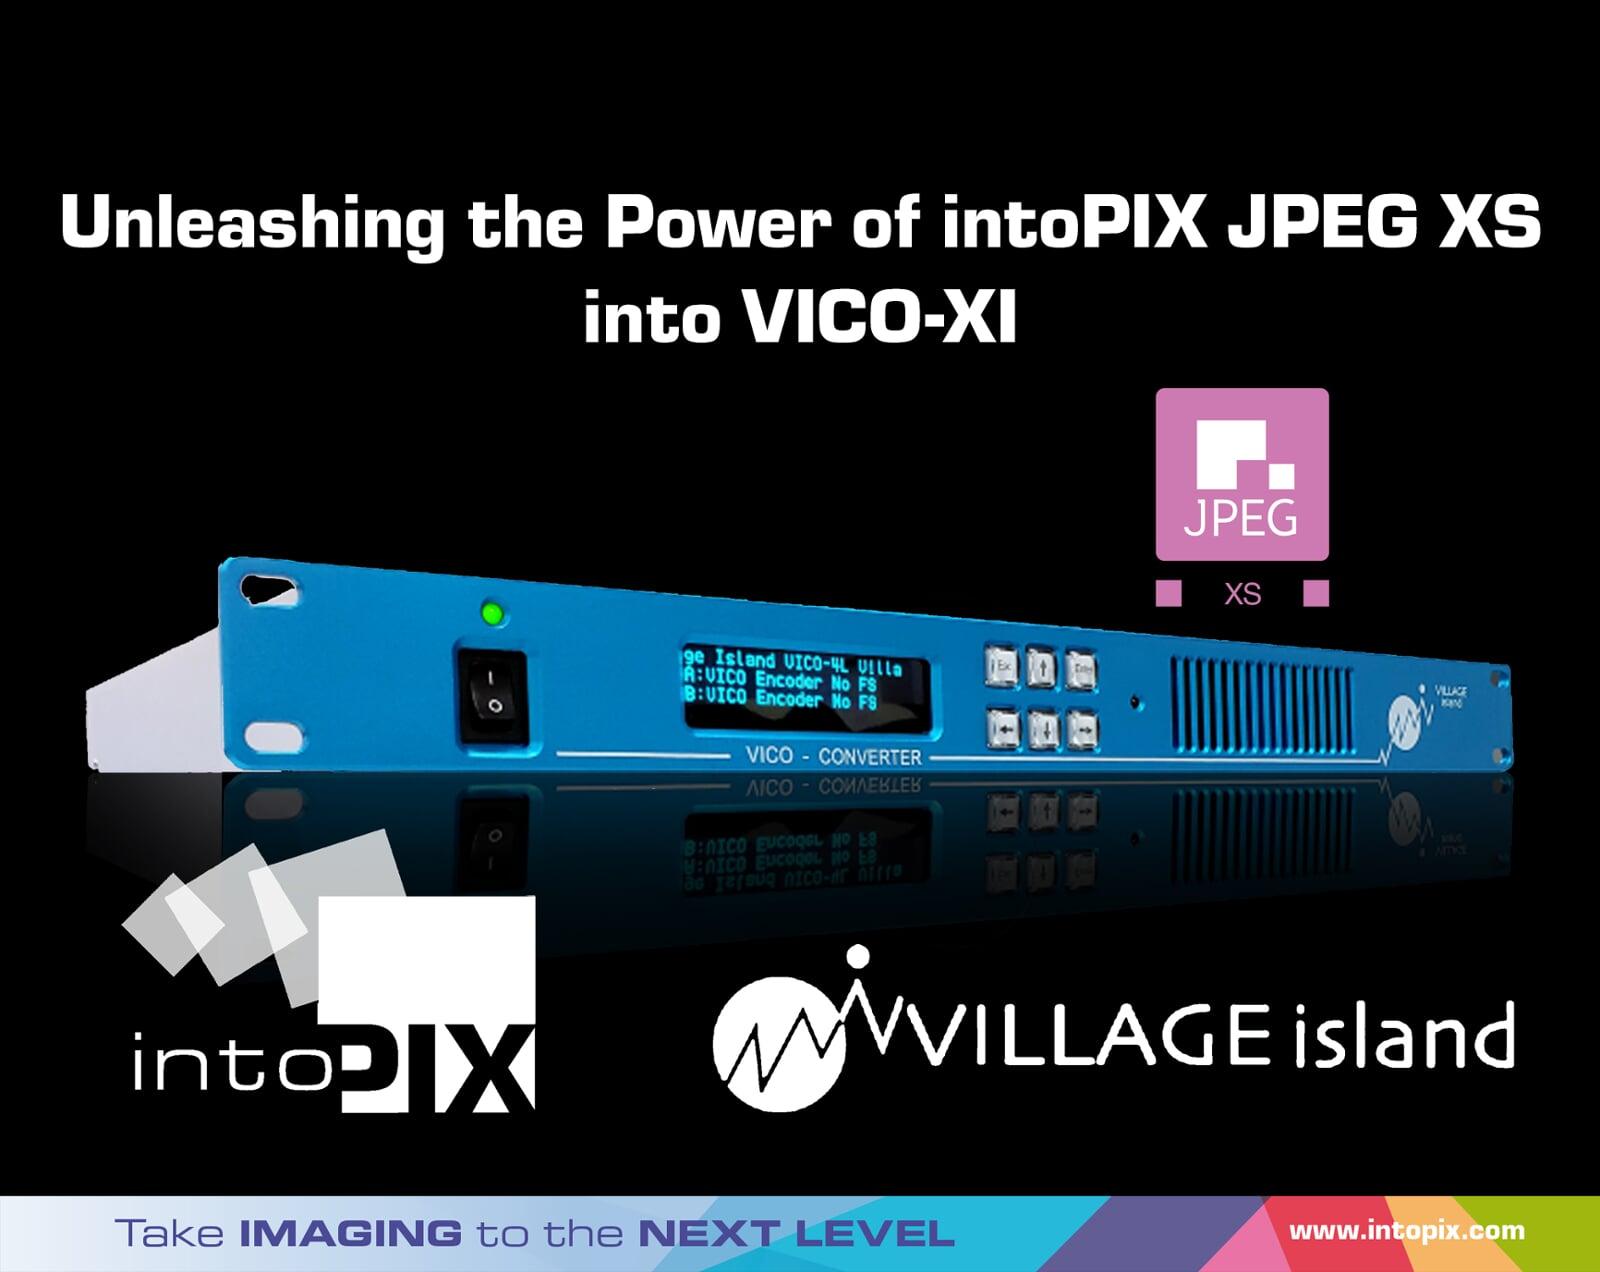 村岛VICO-XI利用intoPIX 技术，通过降低带宽和微秒级的延迟，彻底改变了IP 视频转换。